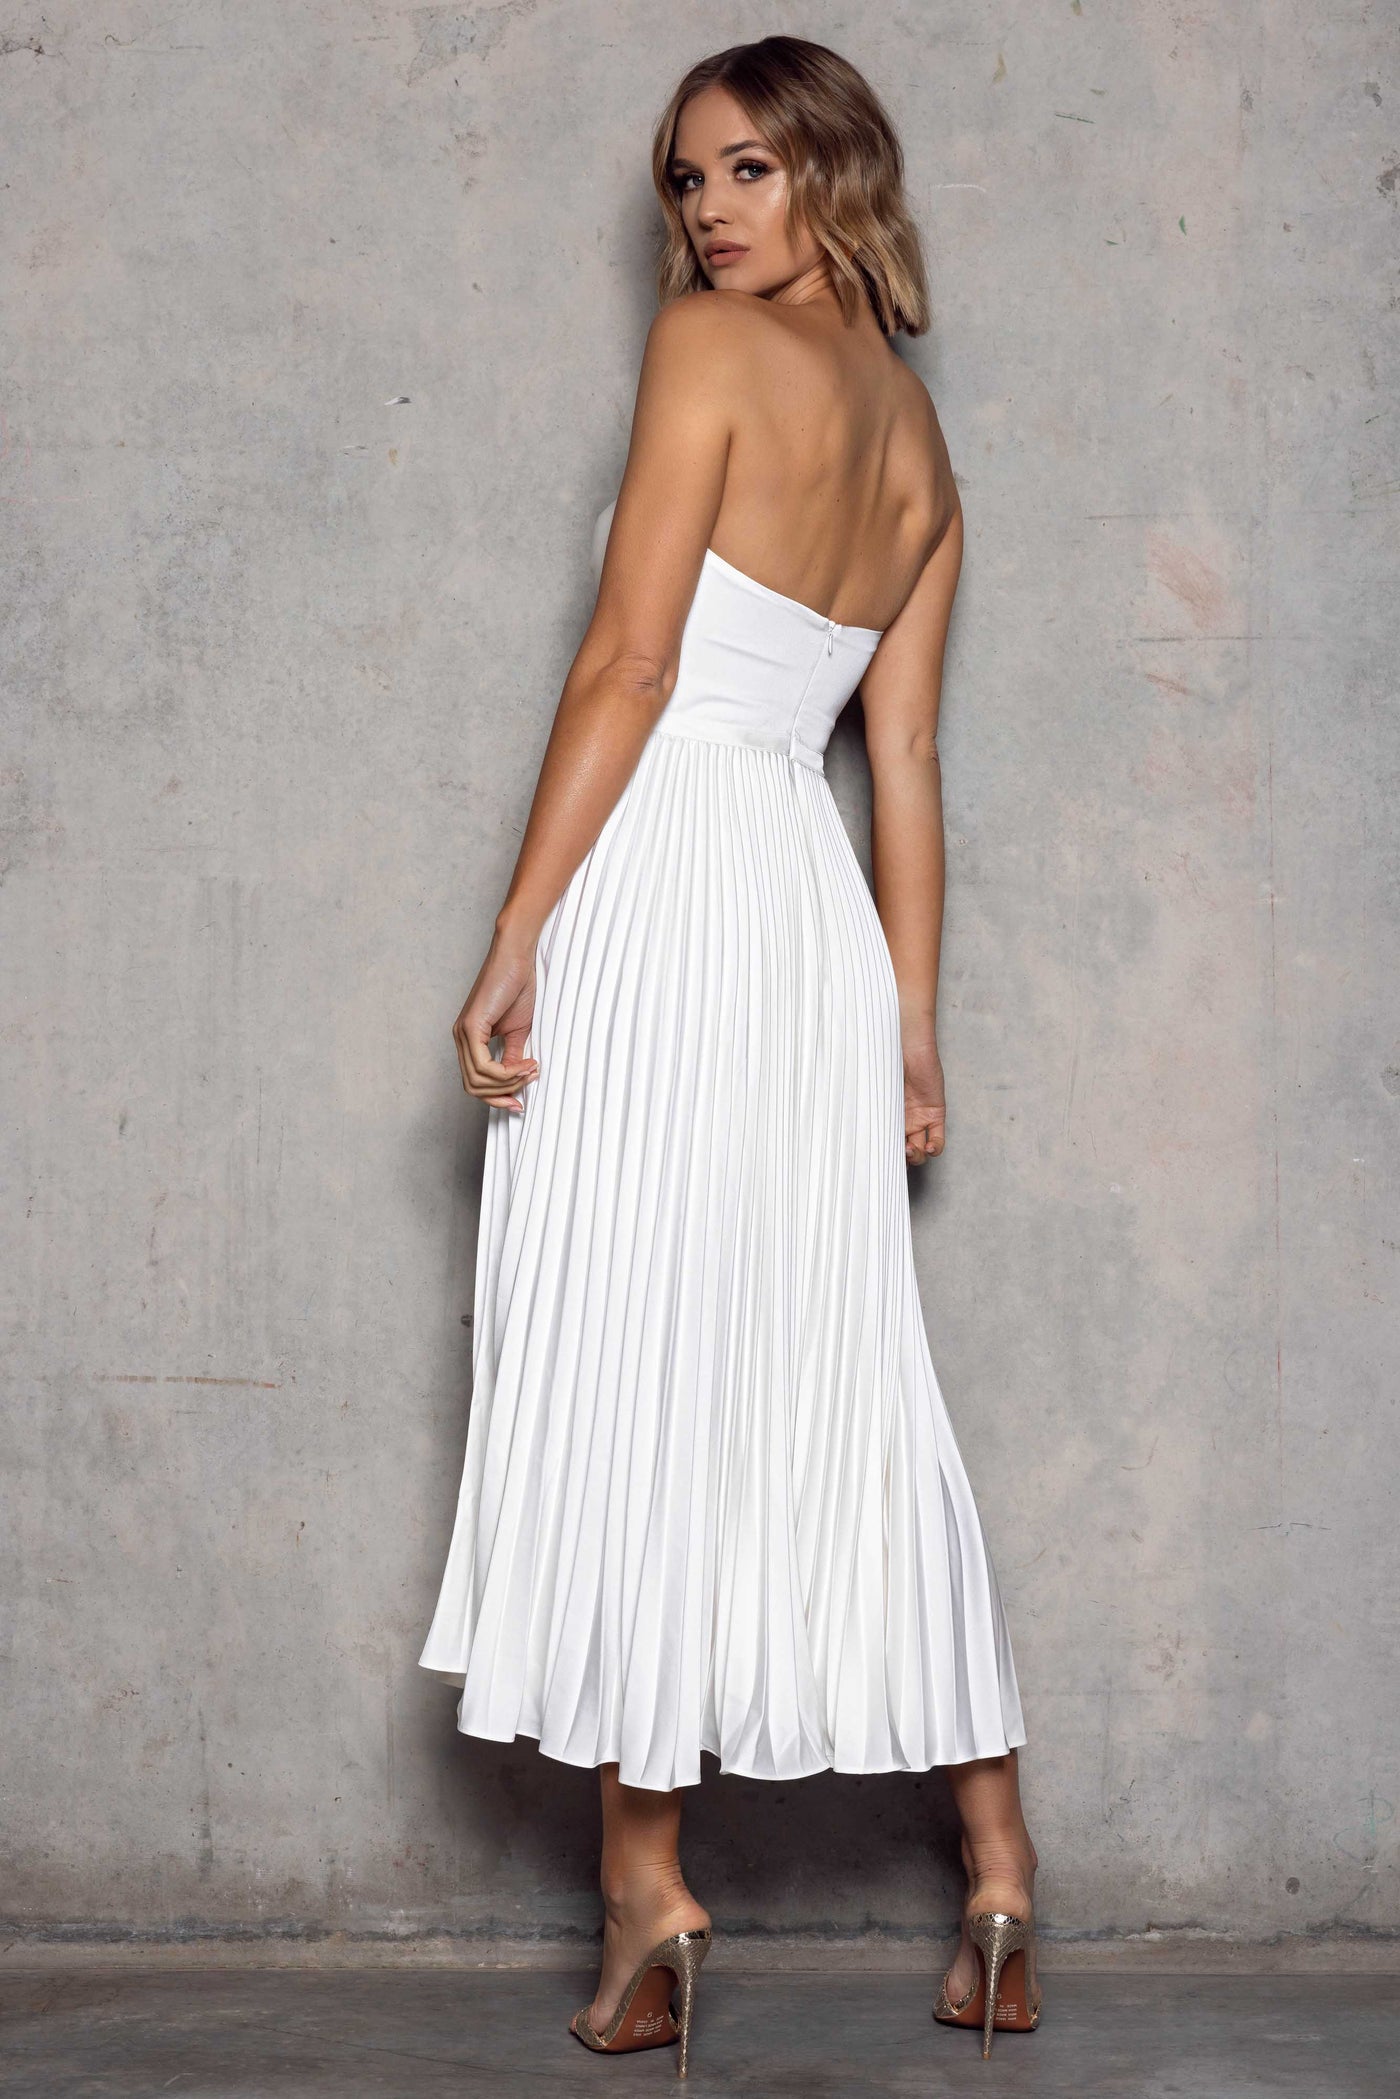 Hailey Dress in White by Elle Zeitoune - RENTAL